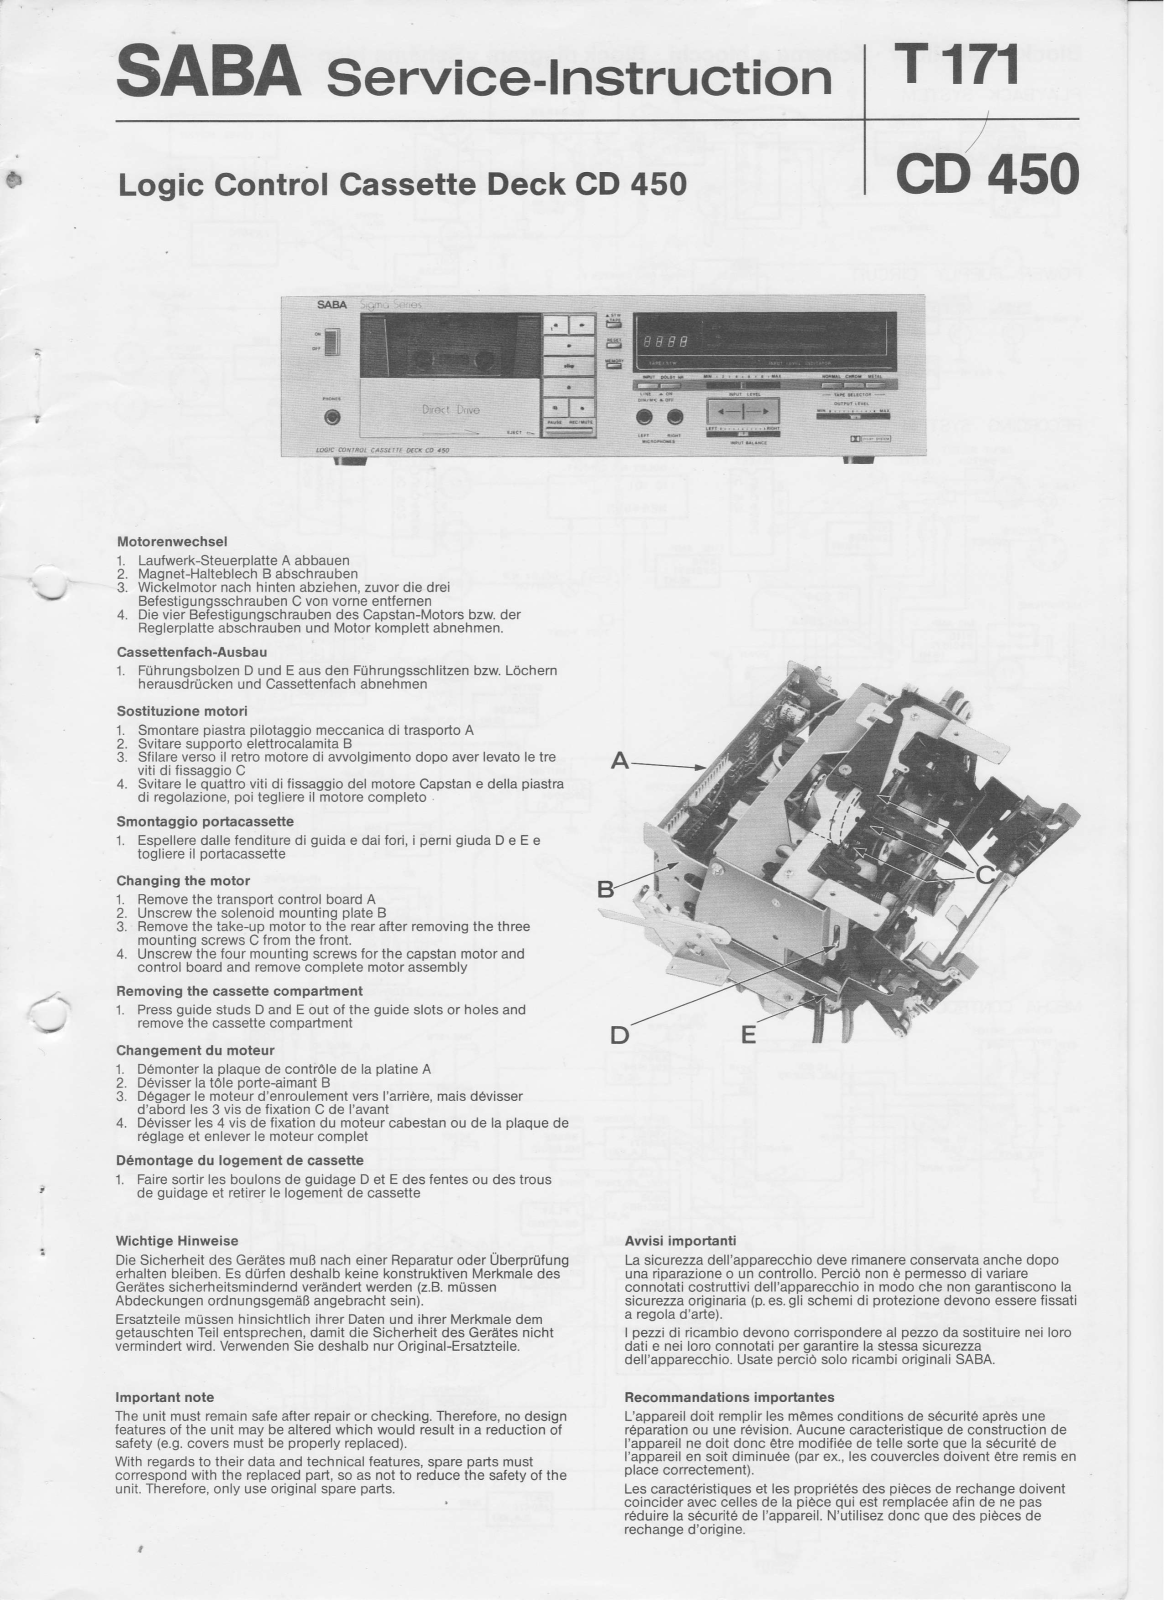 Saba CD450 Service Manual